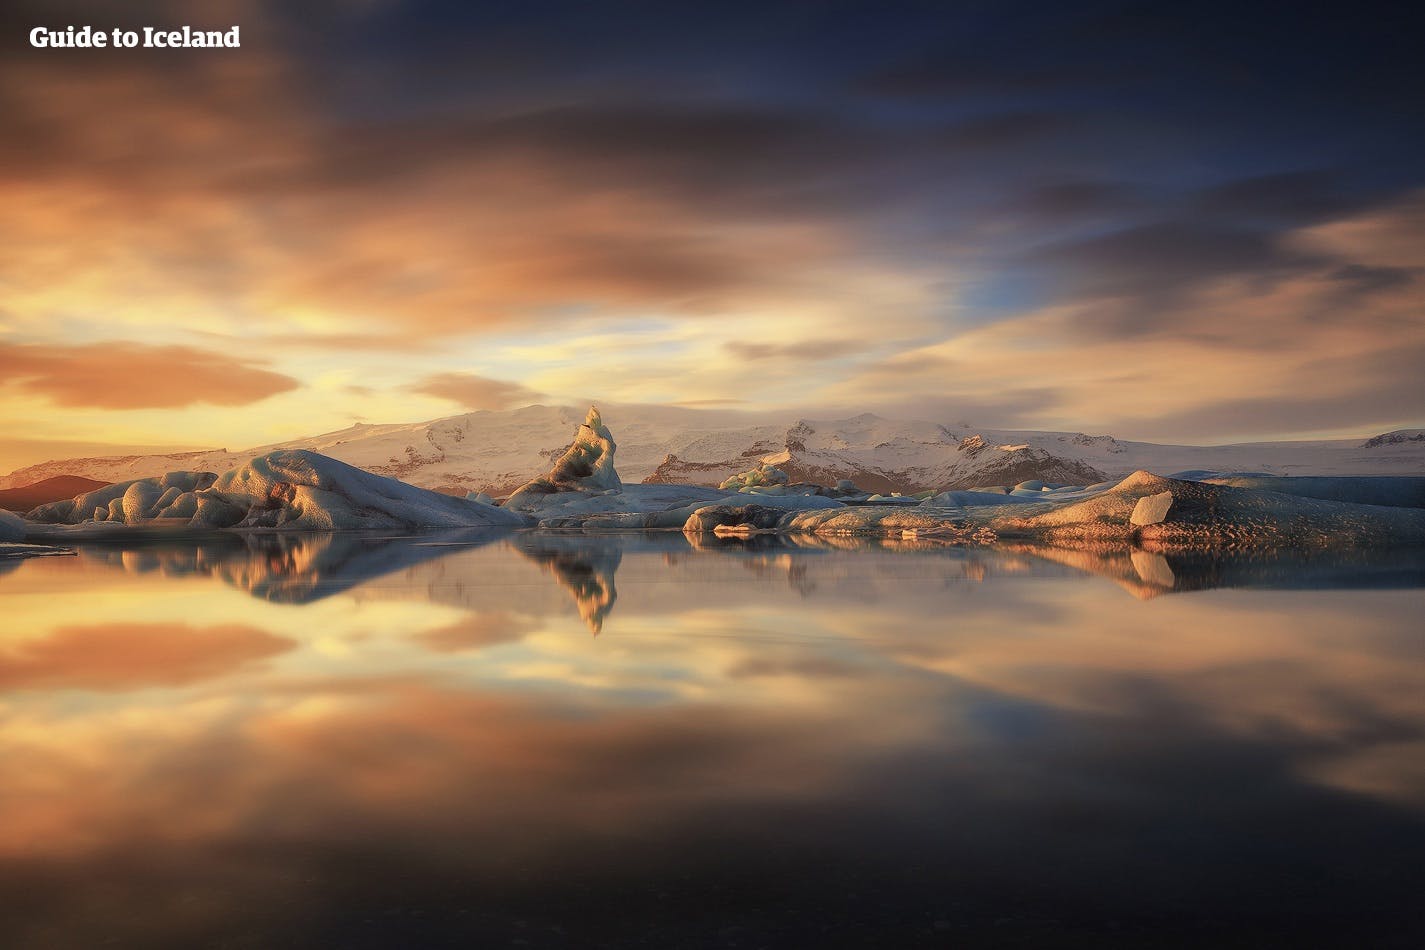 Debido a su inmensa belleza, la laguna glaciar Jökulsárlón es uno de los destinos turísticos más populares de Islandia.